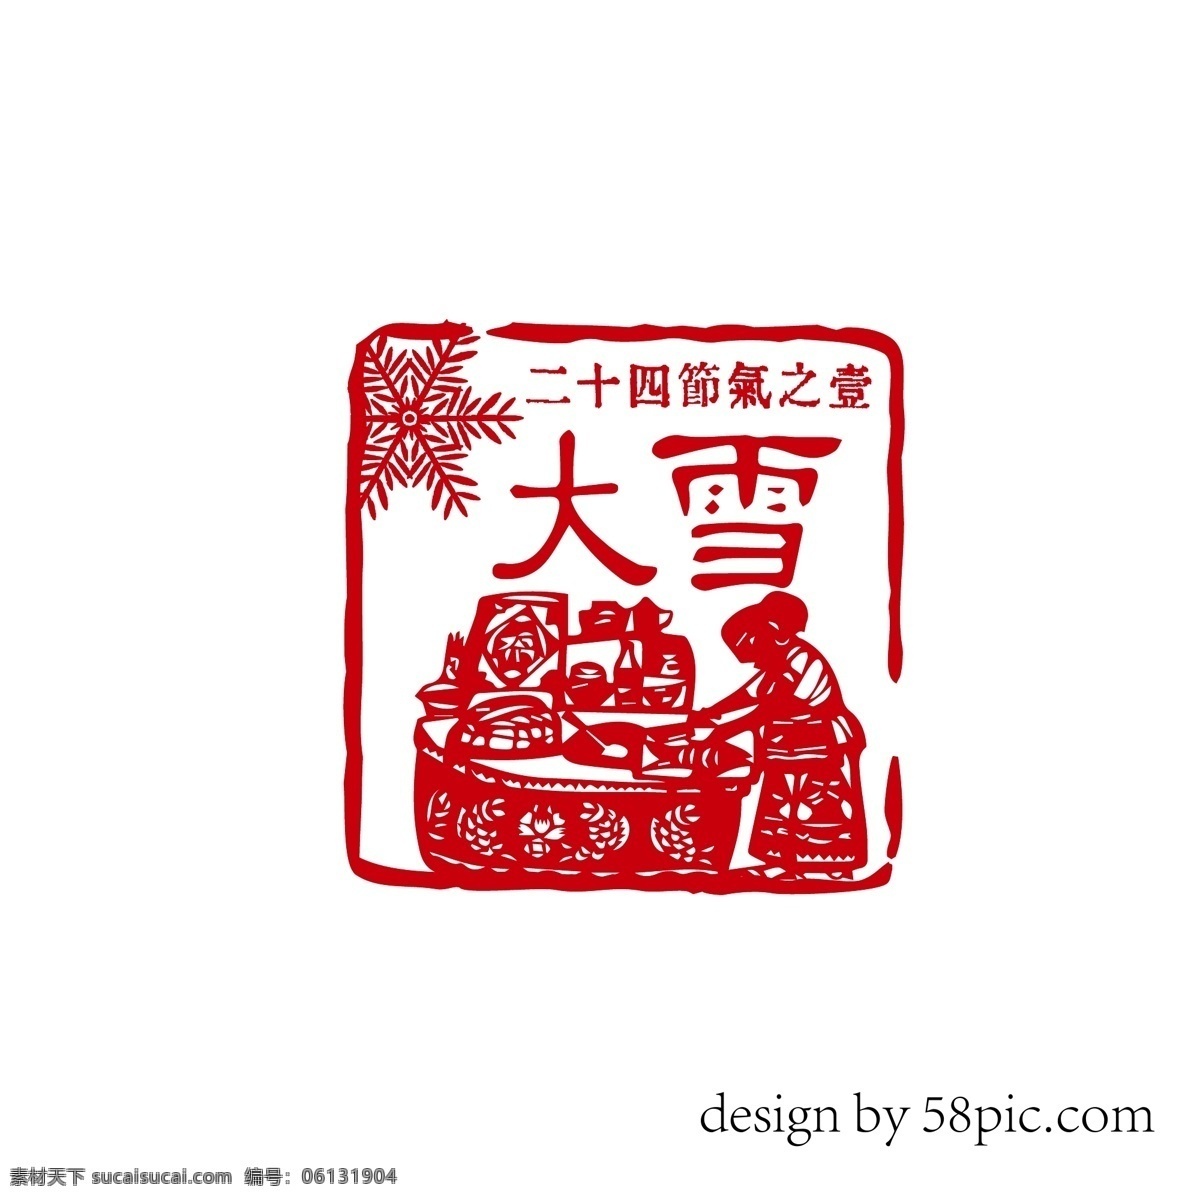 大雪 中国 古风 隶书 印章 艺术 字体 大雪艺术字体 古风印章 印章字体 二十四节气 剪影印章